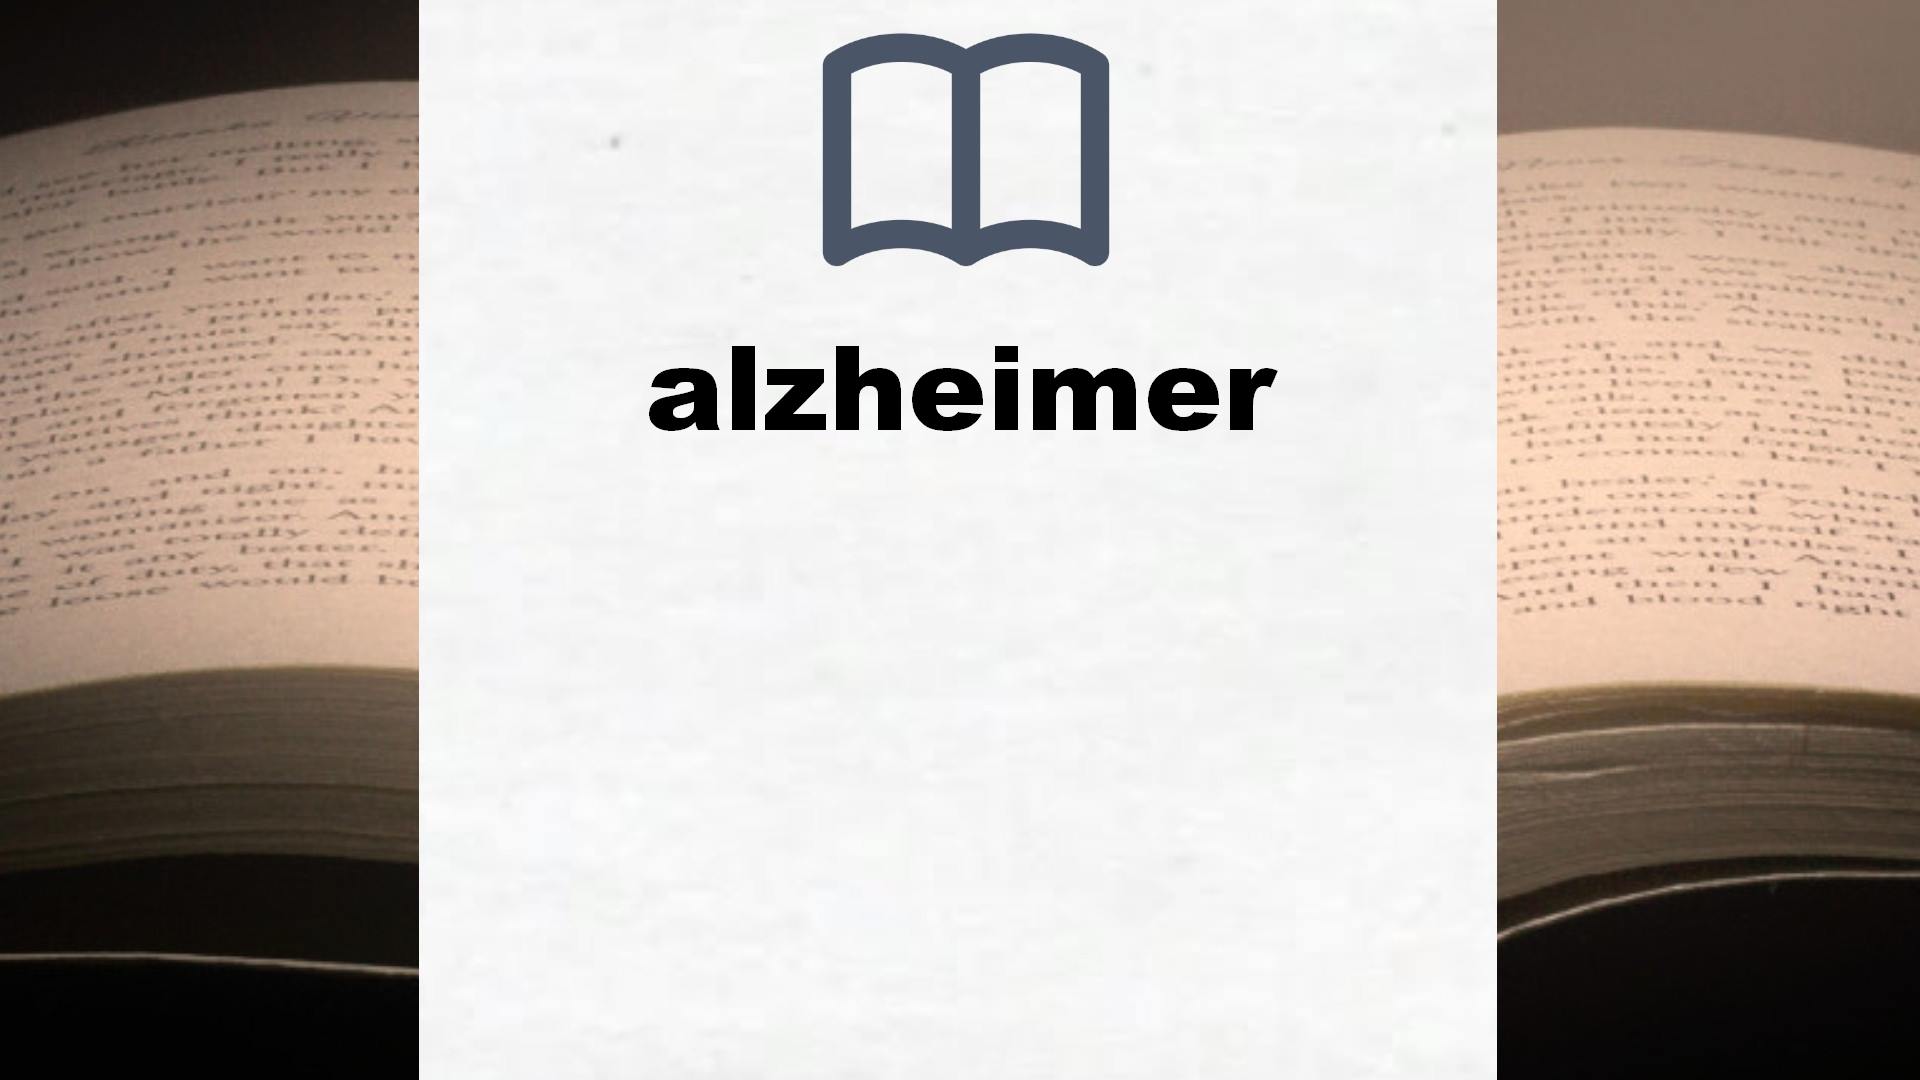 Libros sobre alzheimer